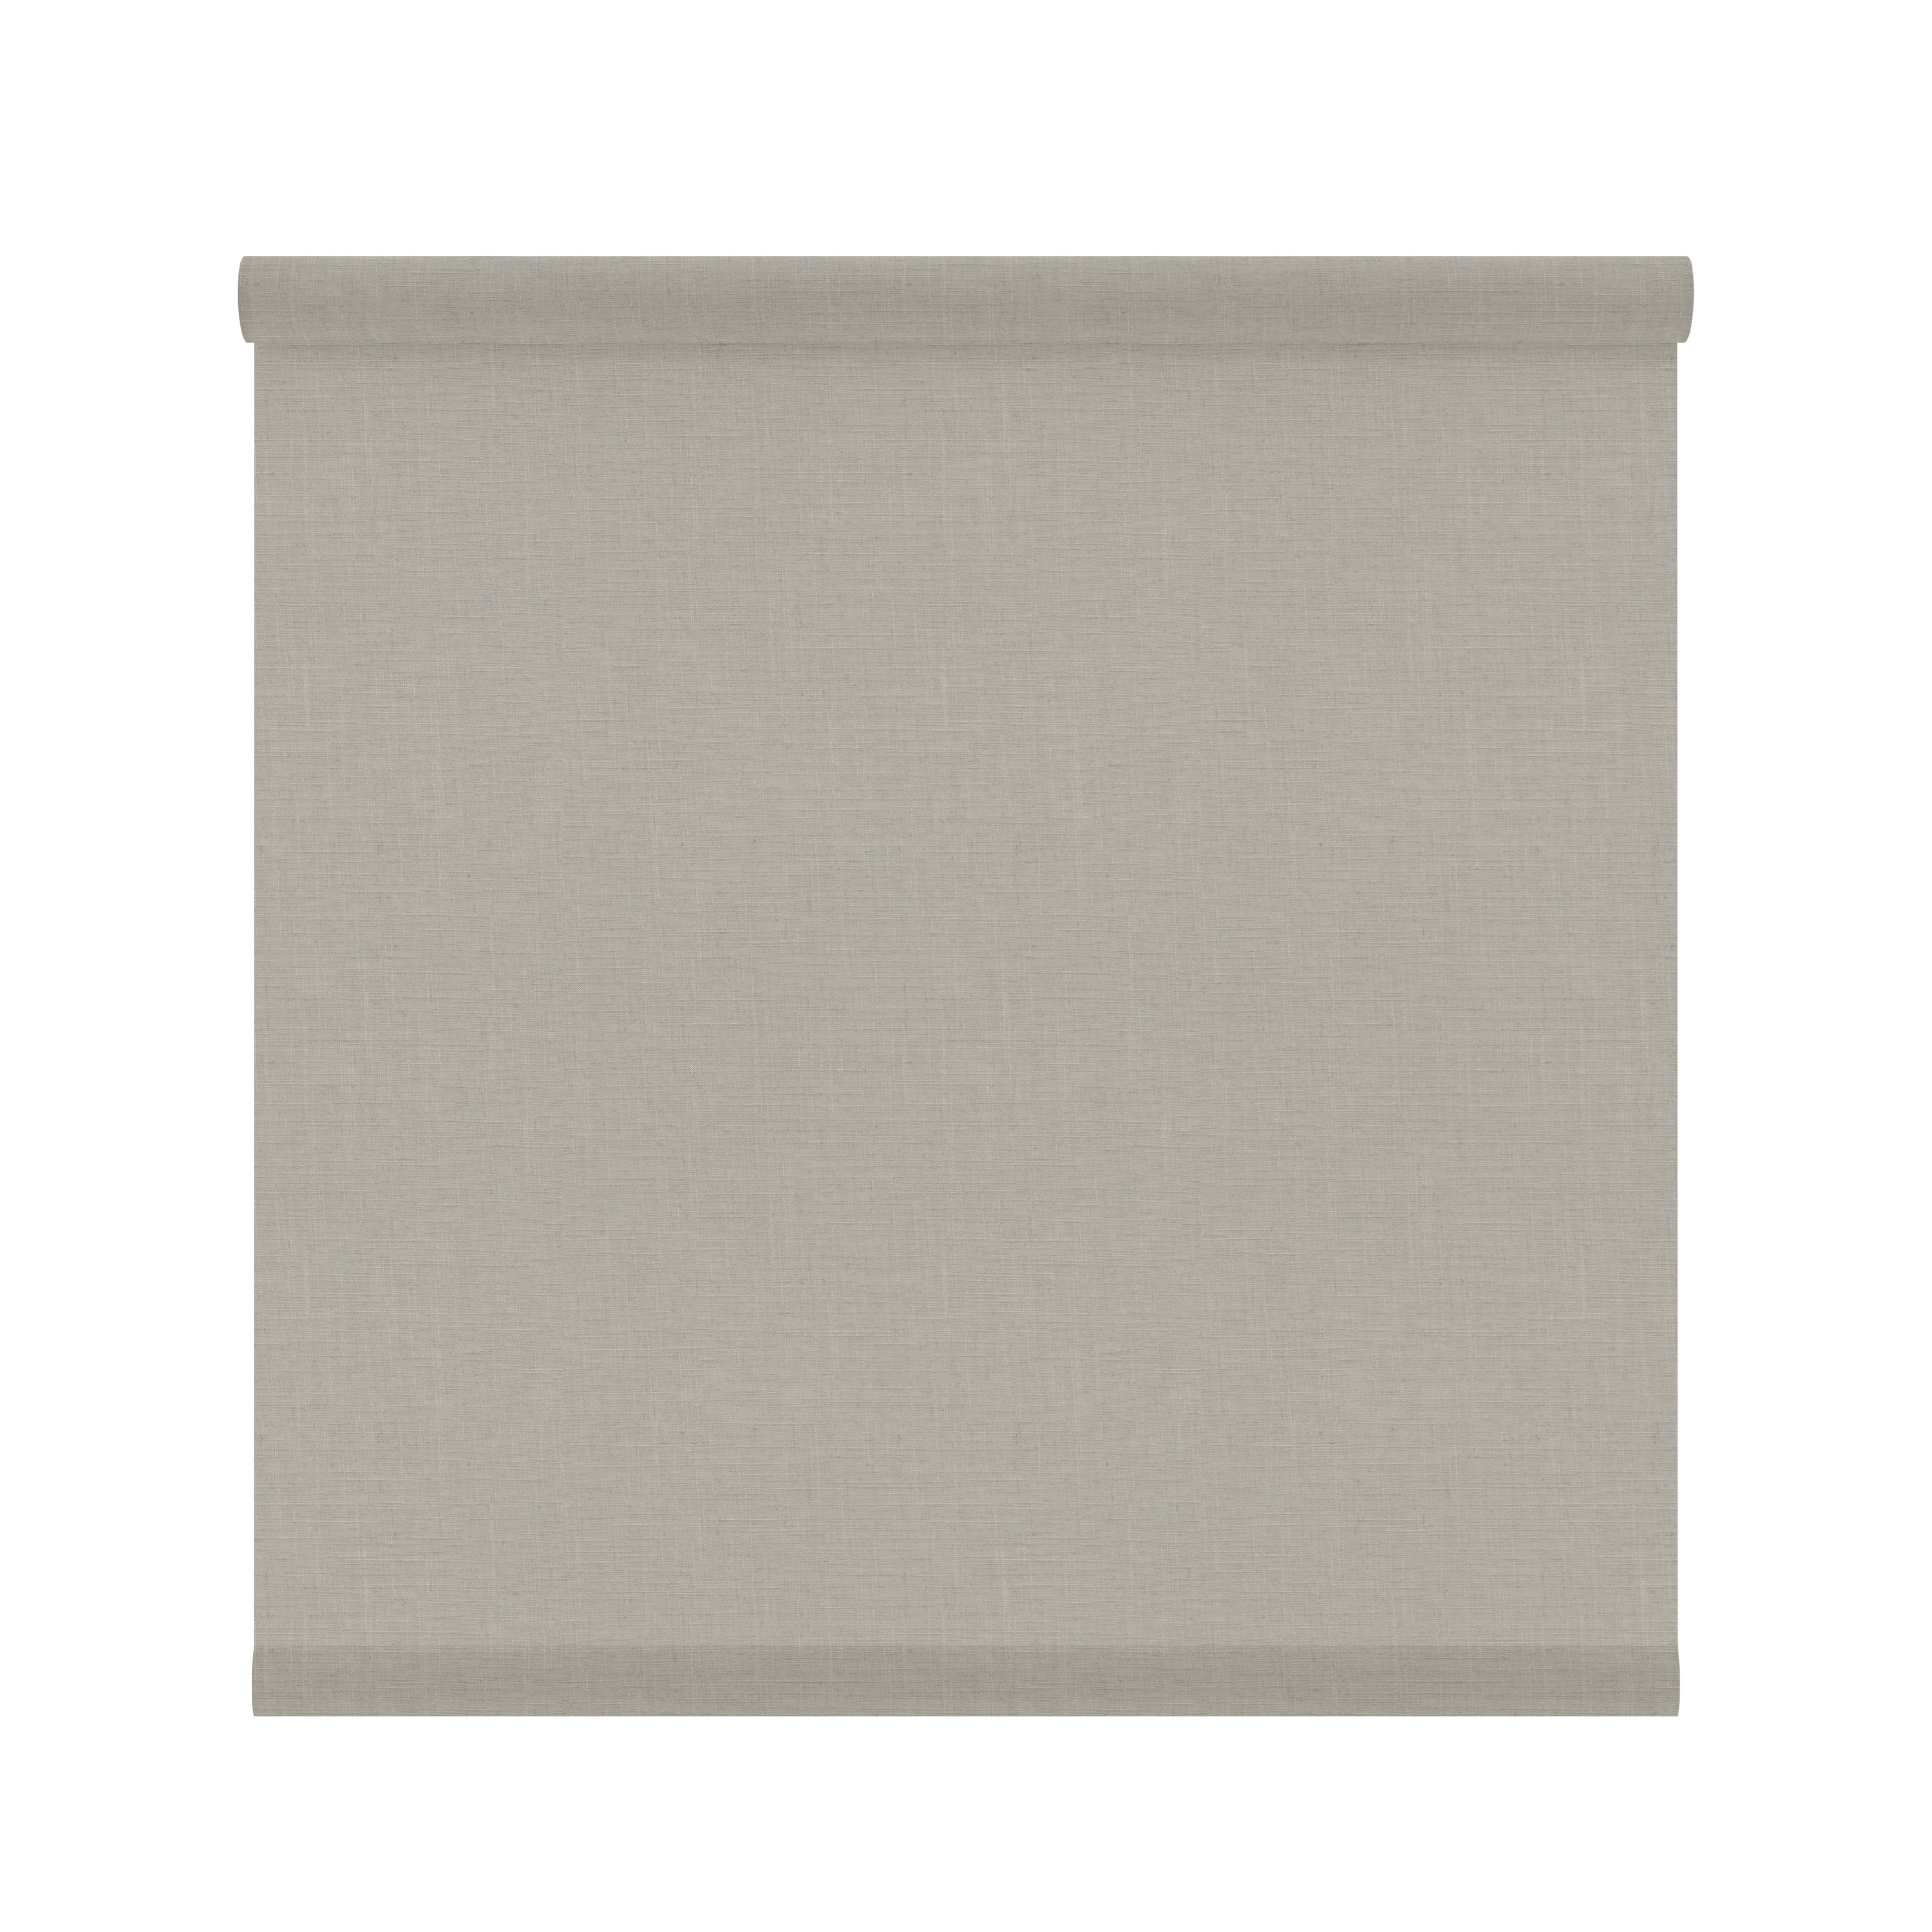 Tessuto per tende a rullo filtrante INSPIRE Brisbane beige 52 x 190 cm - 4